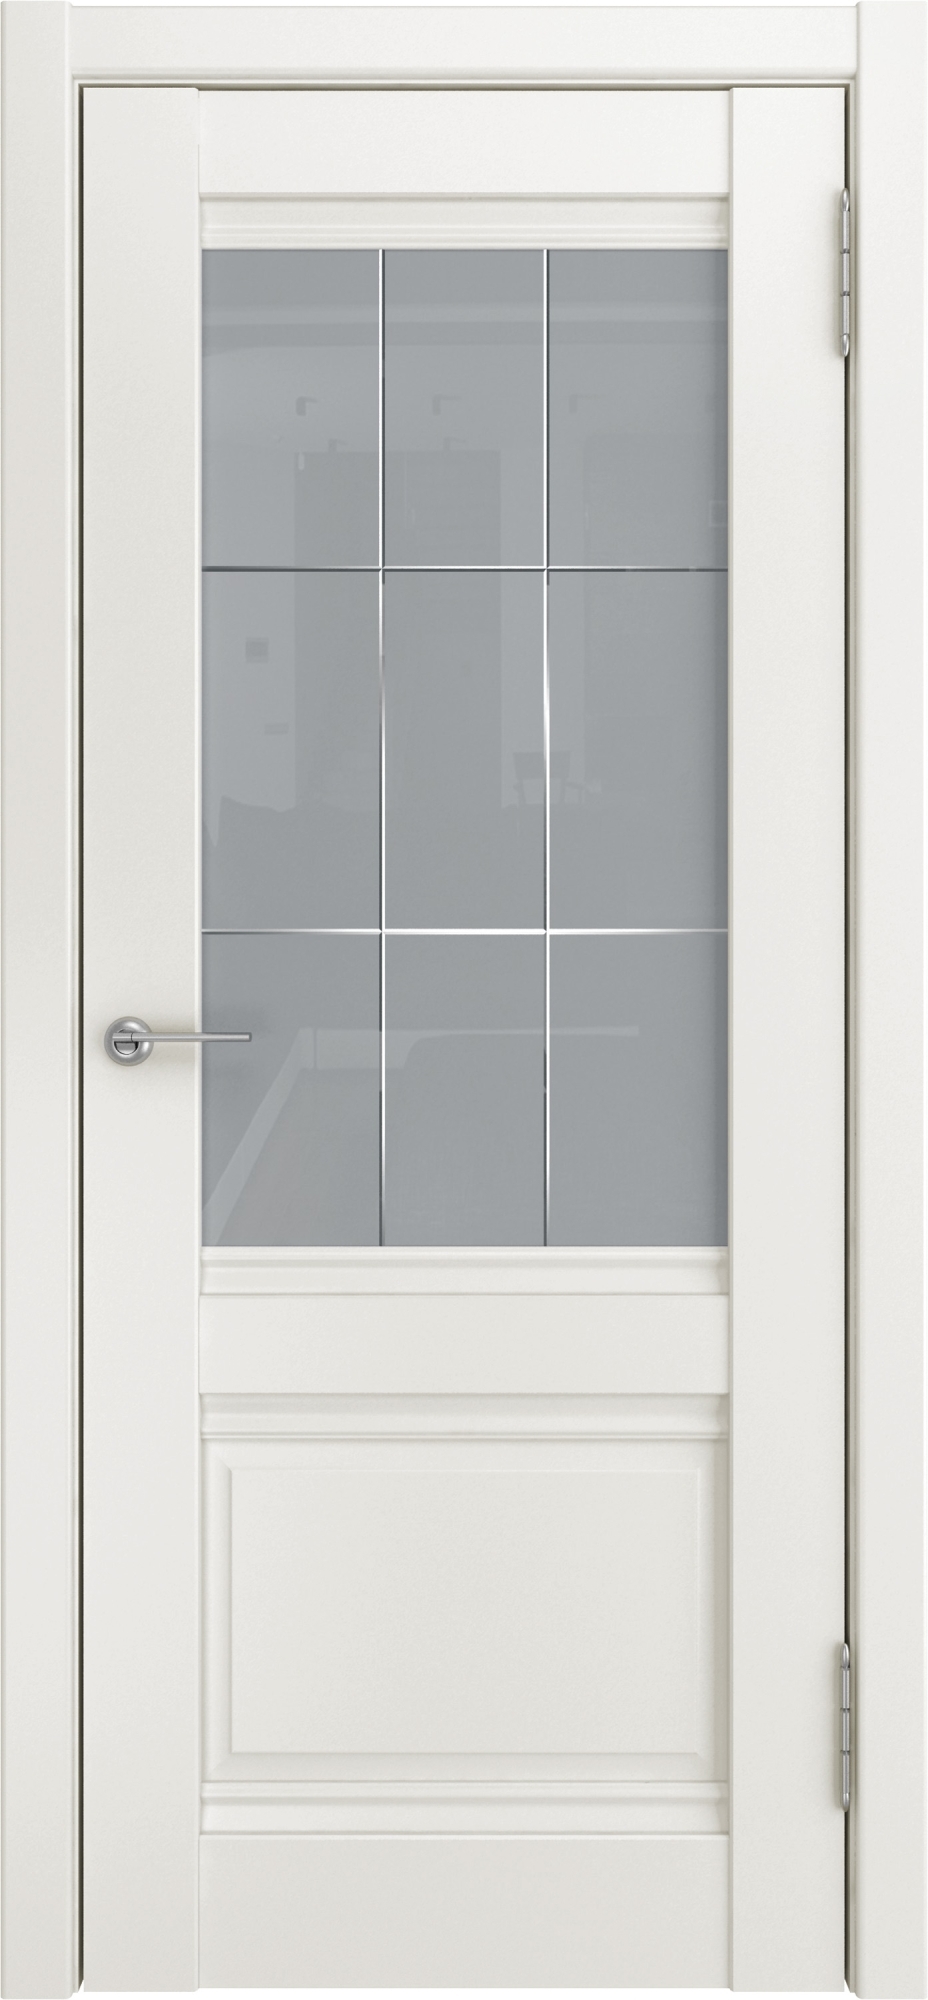 Фото Межкомнатная дверь U-52 (винил, жасмин, стекло, 900x2000)